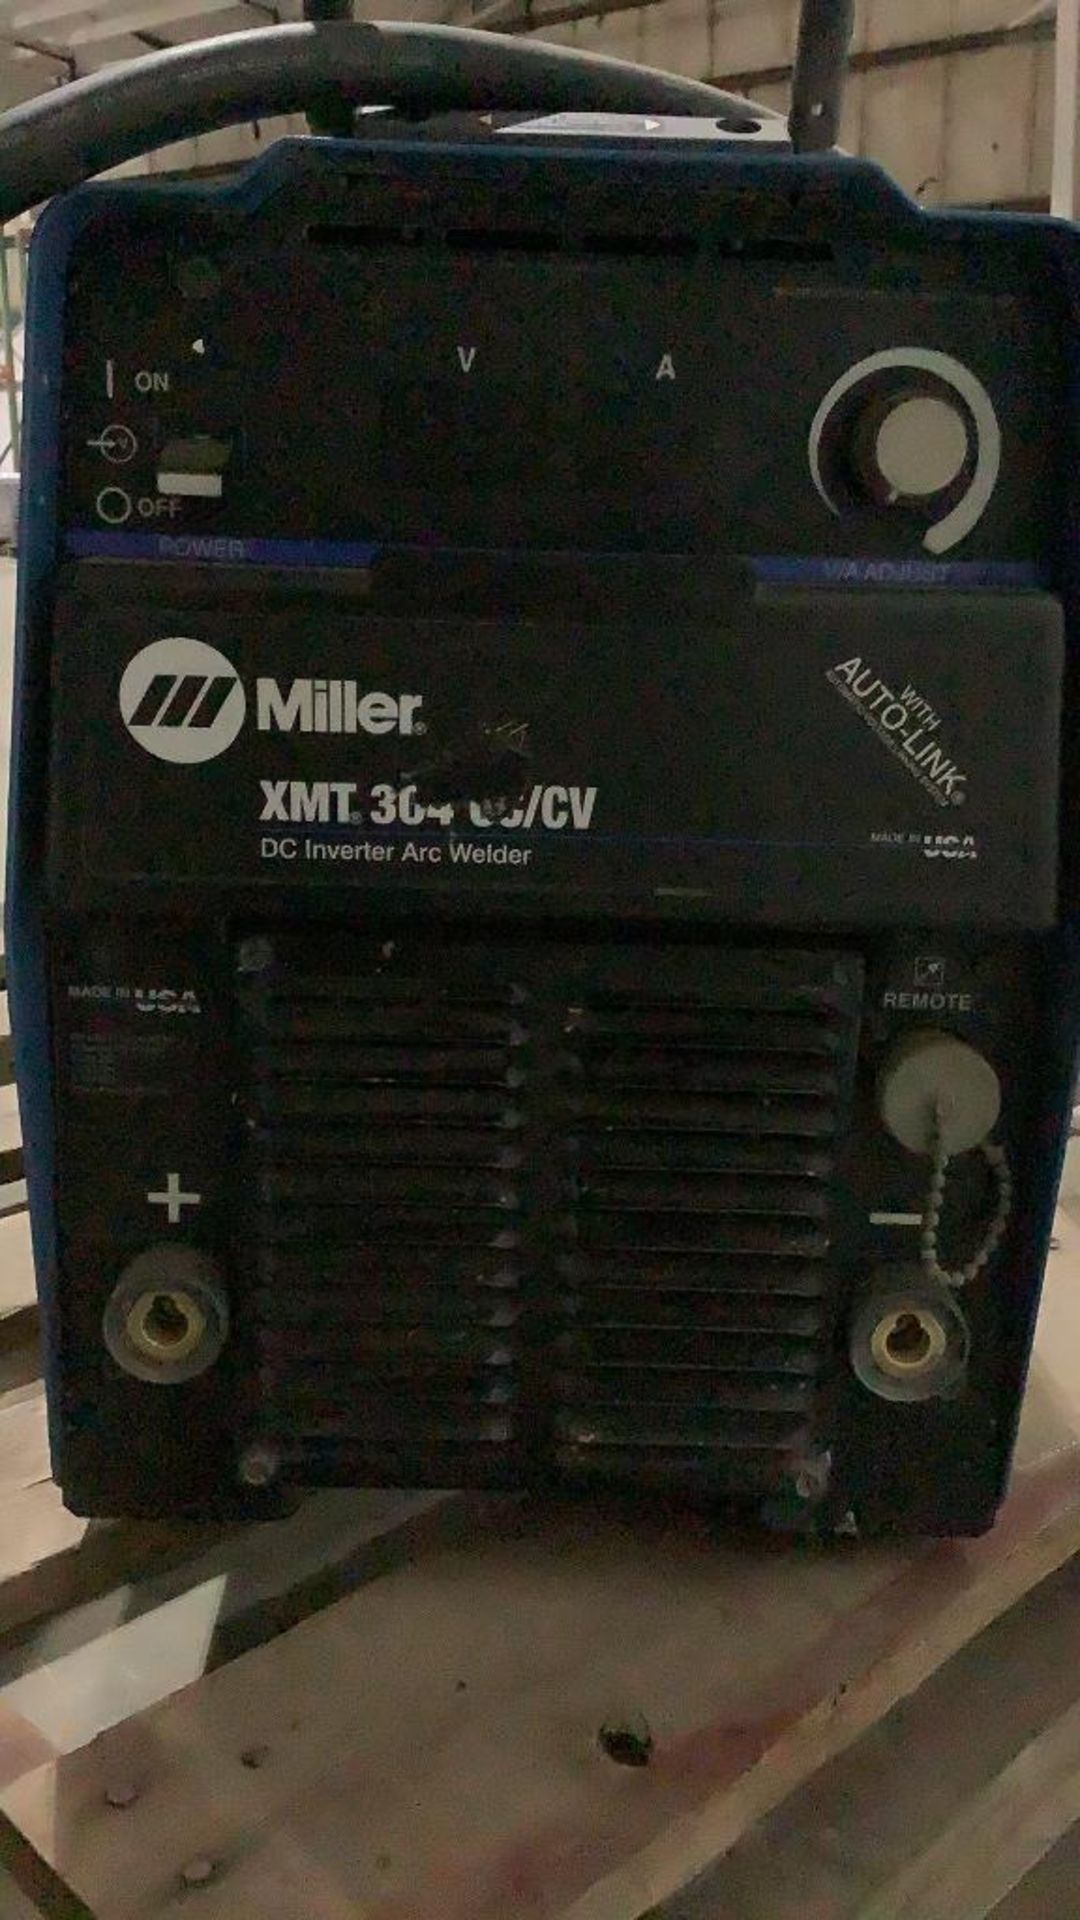 Miller DC Inverter Arc Welder XMT 304 CC/CV - Image 11 of 15